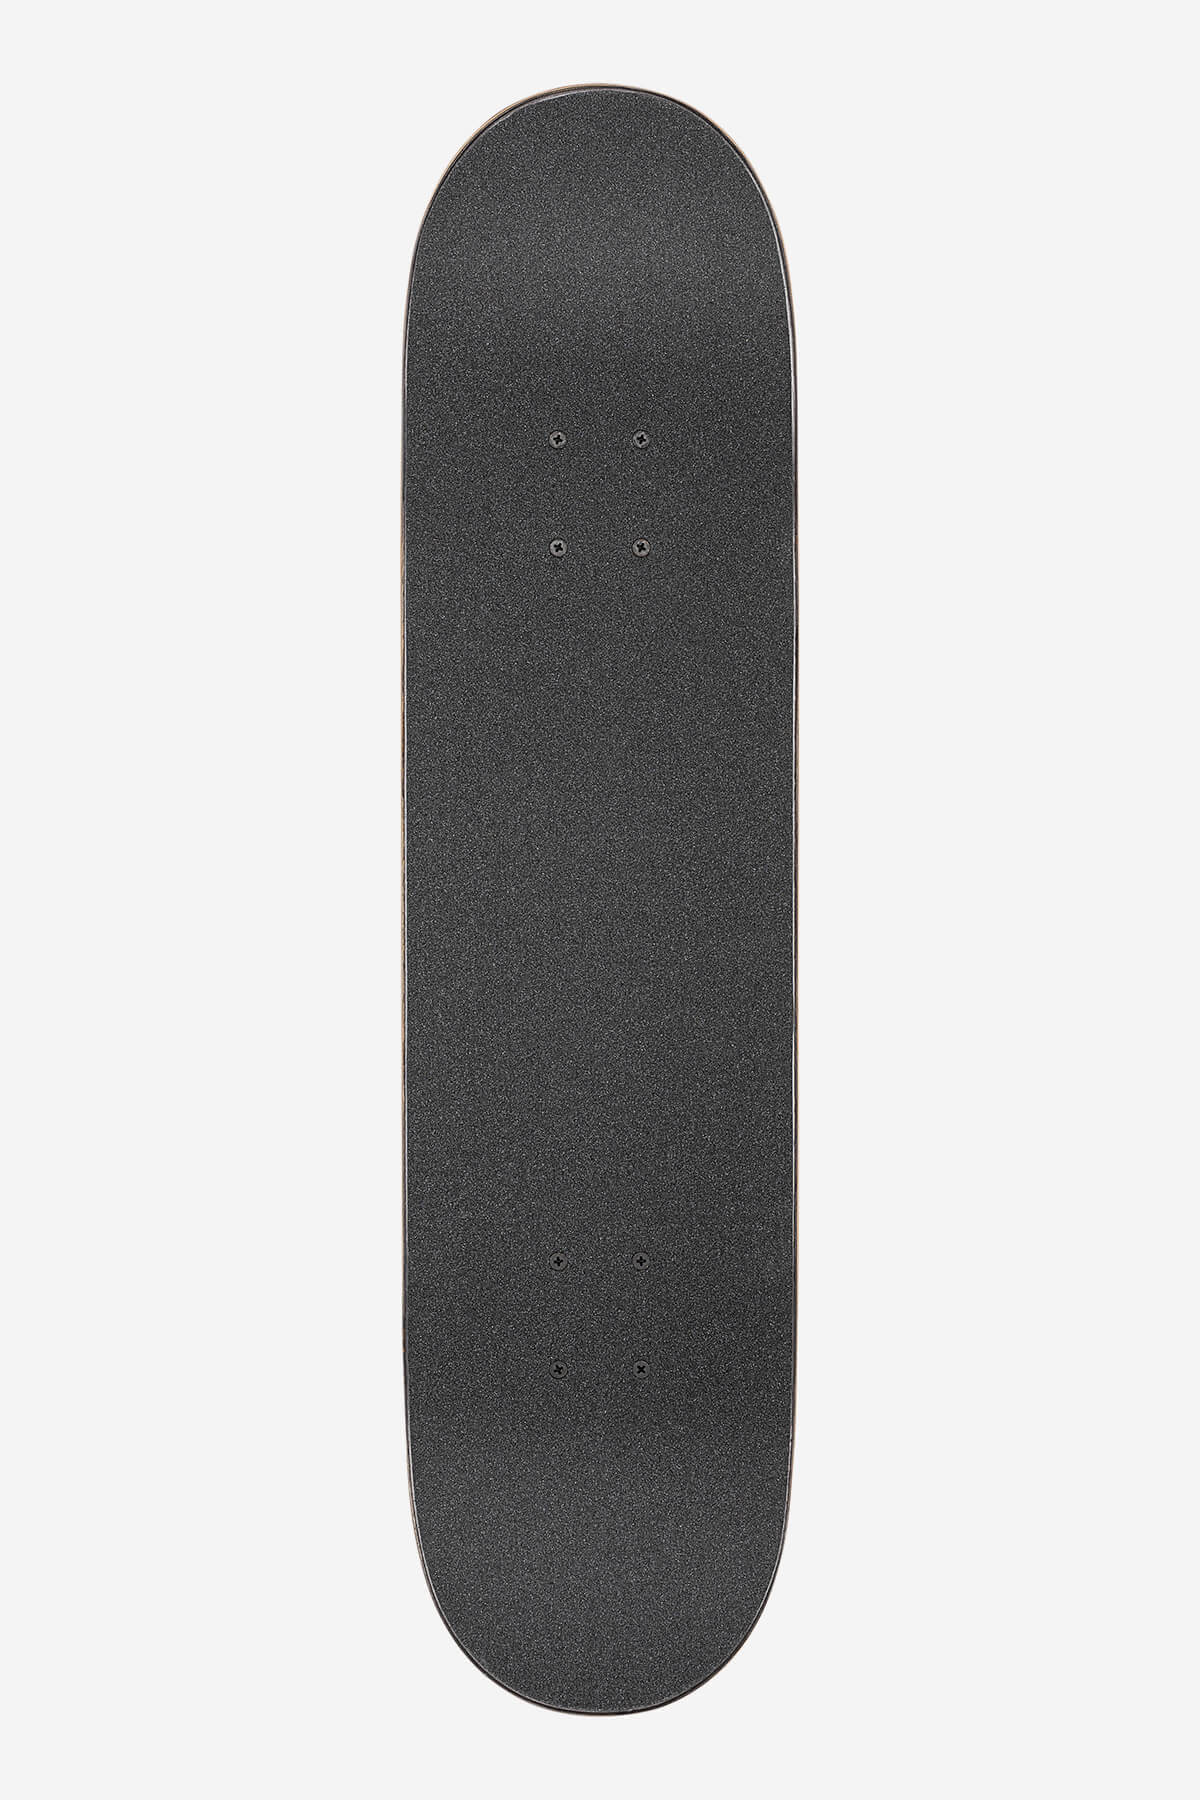 Globe Skateboard completa G1 Ablaze 7.75" completo Skateboard in Tie Dye